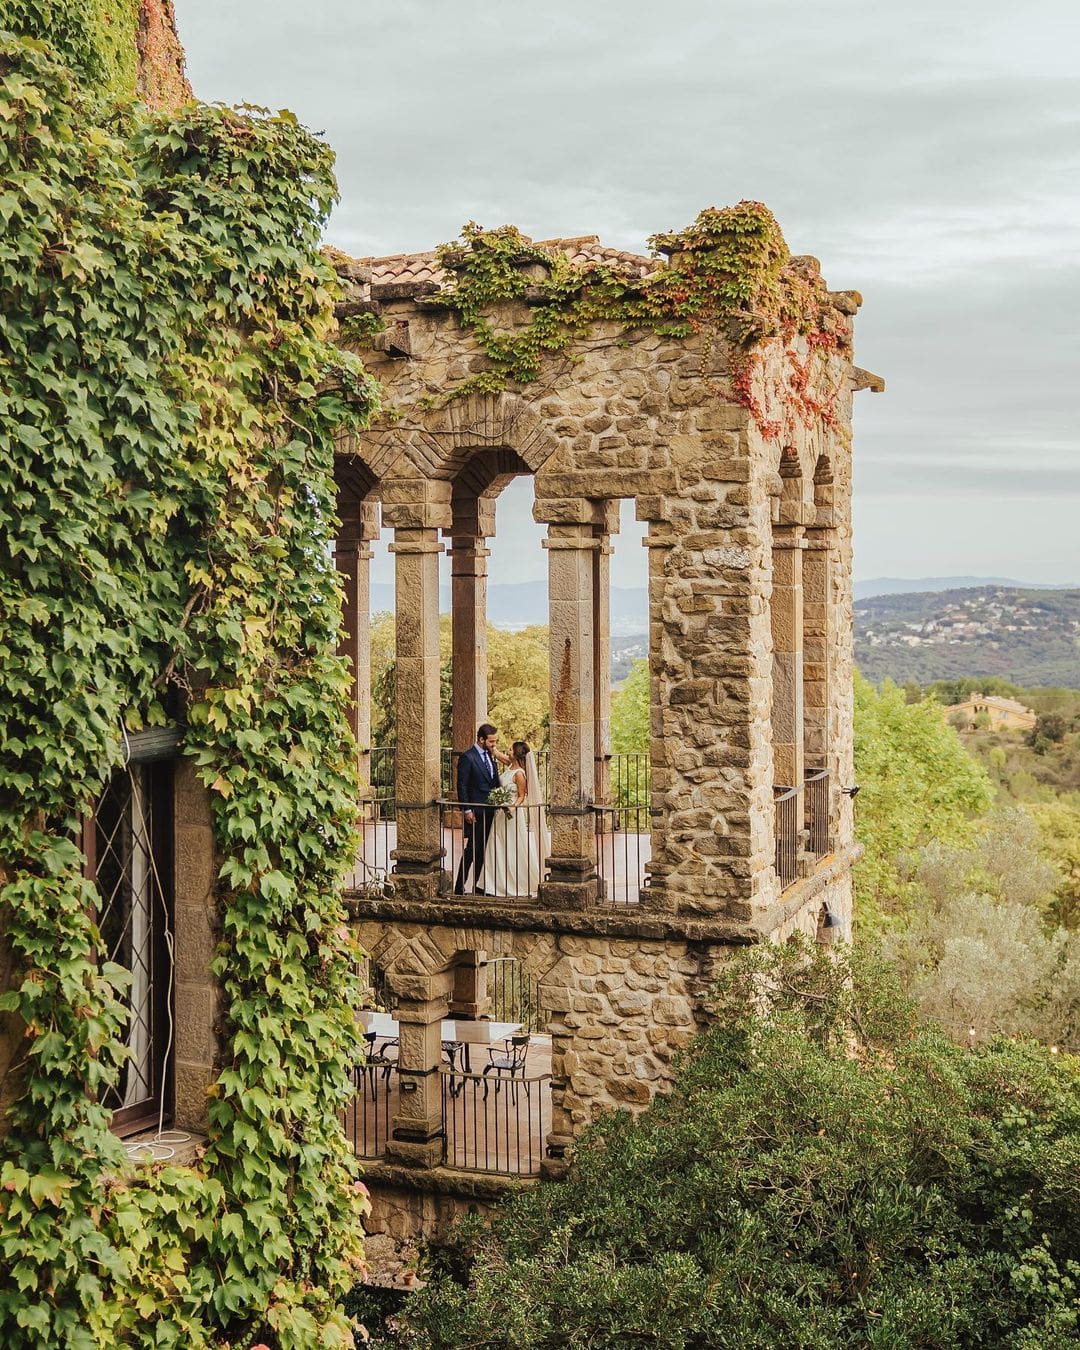 Novios en el balcón de La Baronia con vista aérea, capturando un momento íntimo con el paisaje natural y arquitectónico como testigo. Se presenta como un de los mejores lugares para hacer tu boda de destino en España.